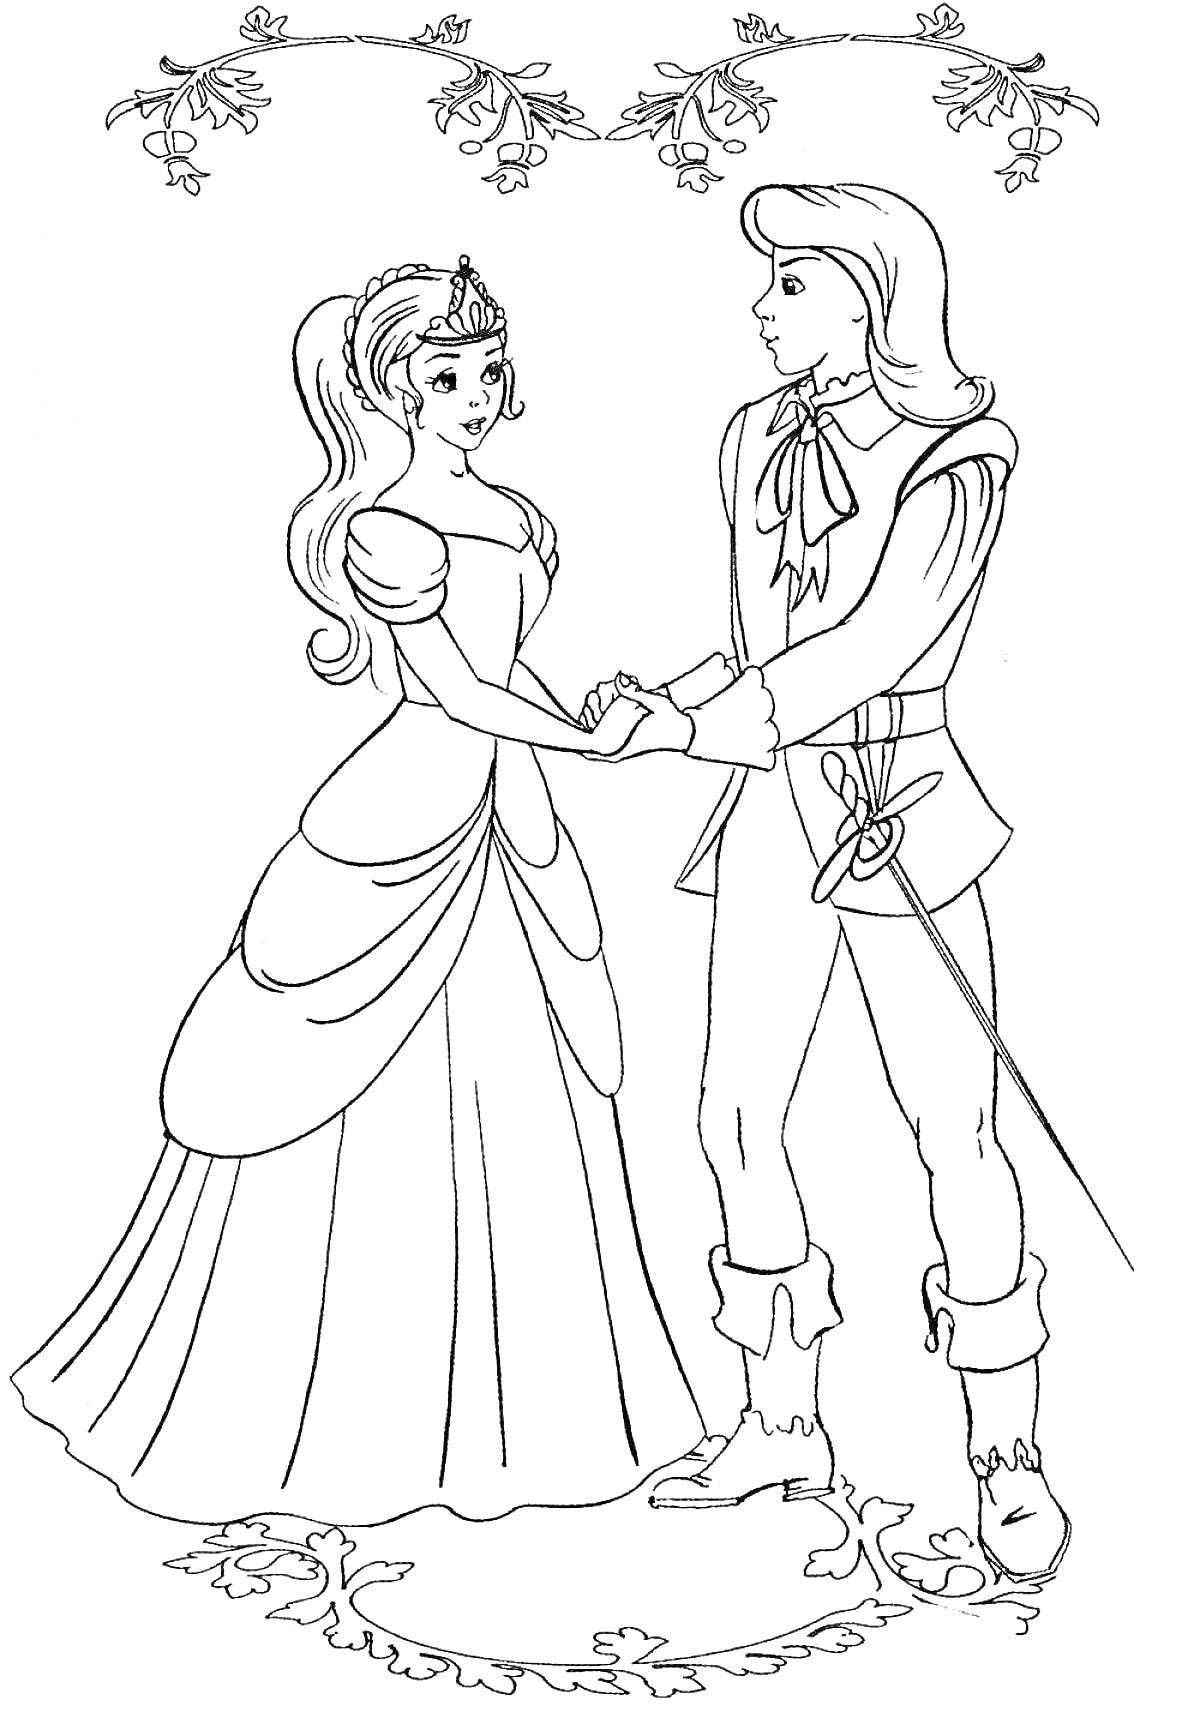 Принц и принцесса под аркой цветущих веток и на узорчатой дорожке